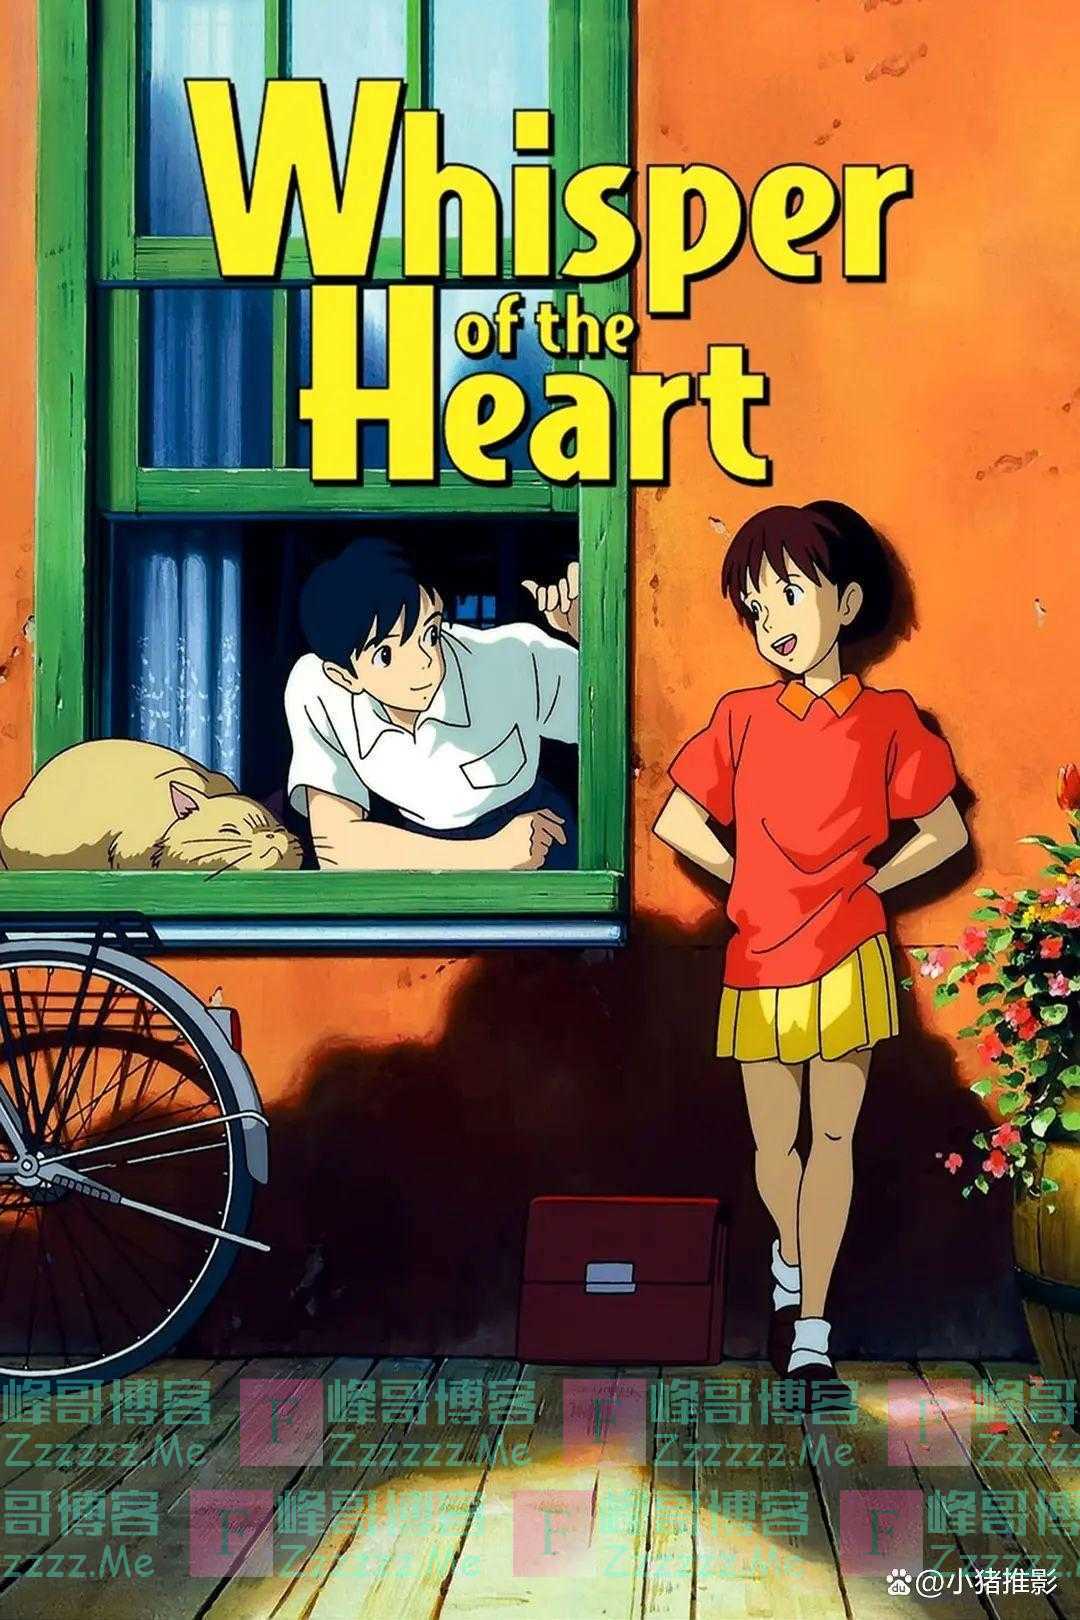 宫崎骏最值得观看的十部动画电影，哪一部是你心目中的No.1?